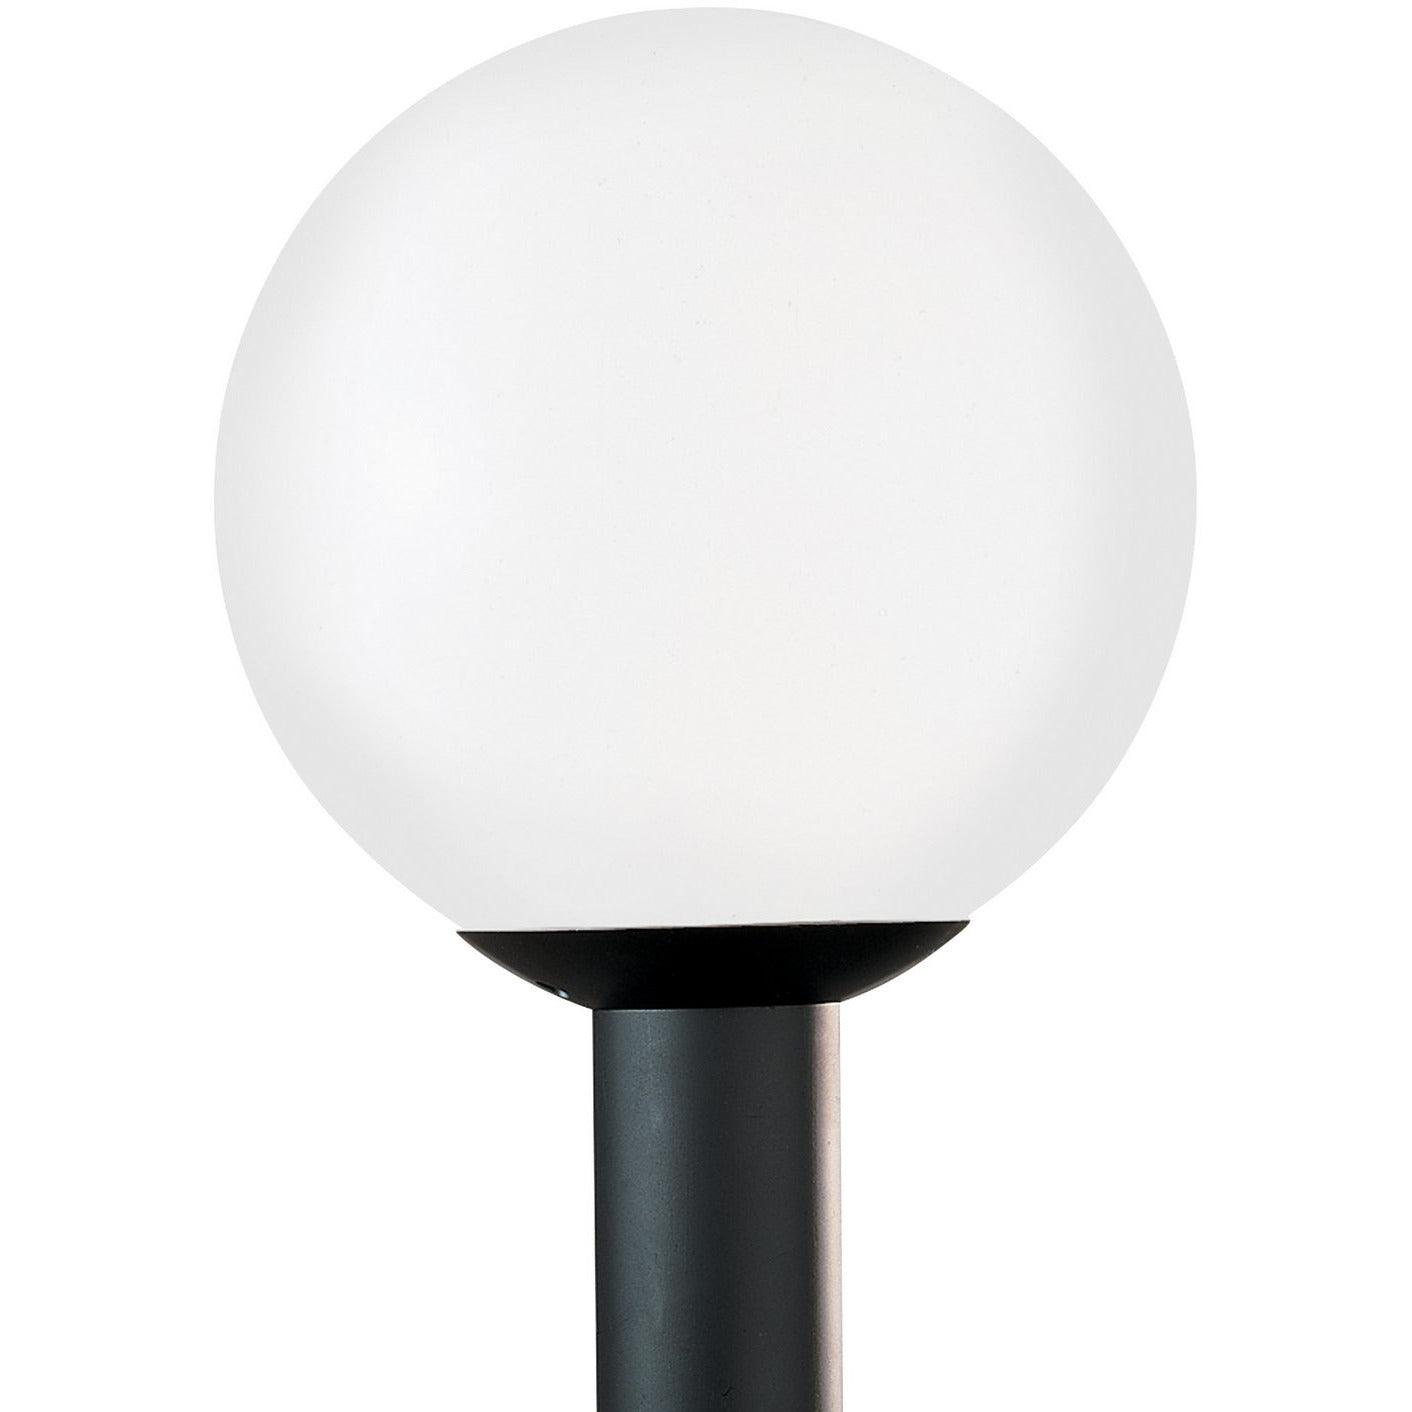 Generation Lighting - Outdoor Globe Outdoor Post Lantern - 8252EN3-68 | Montreal Lighting & Hardware